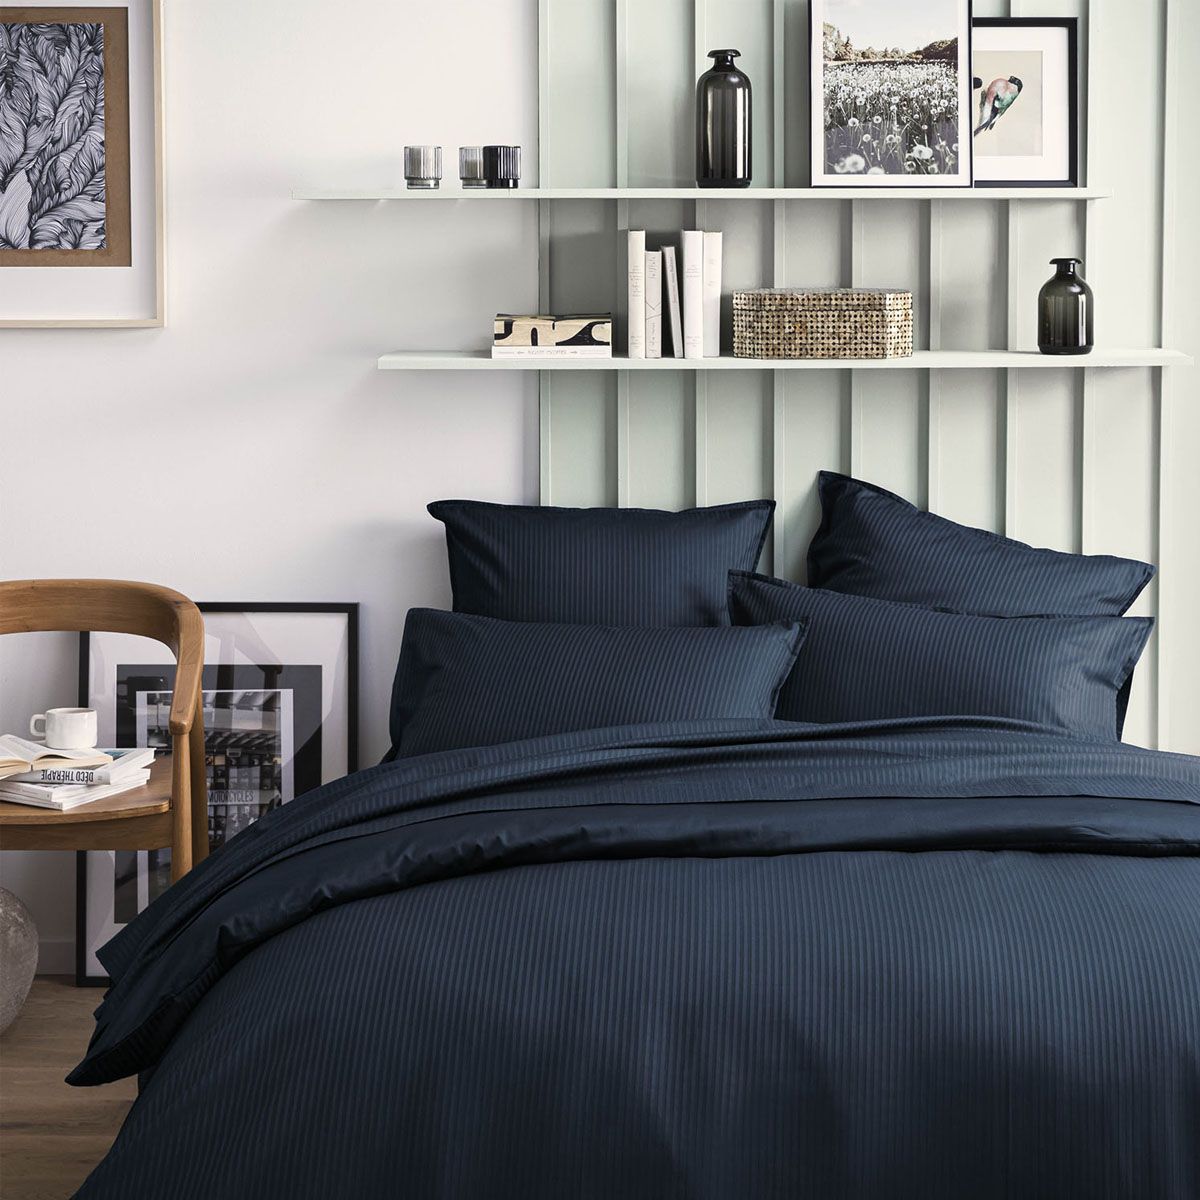 65 x 65 cm x 2 Basics Parure de lit avec housse de couette en satin 240 x 220 cm Rayures bleu glace texturées 